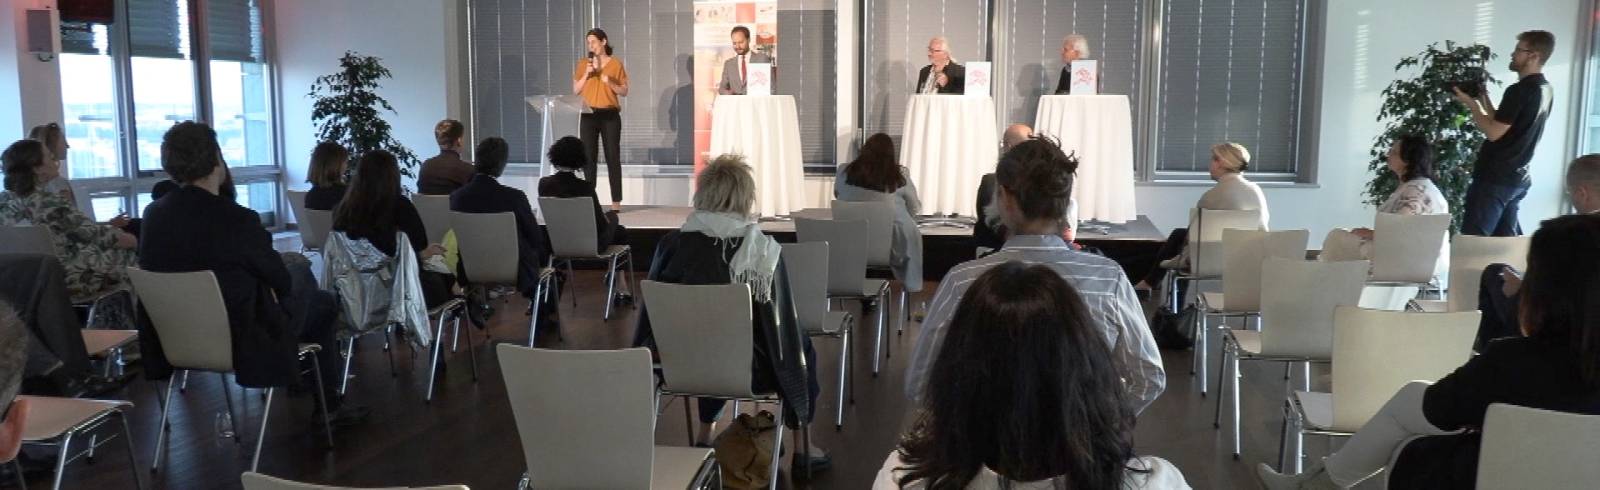 Präsentation: "Wiener Wohnwunder" vorgestellt